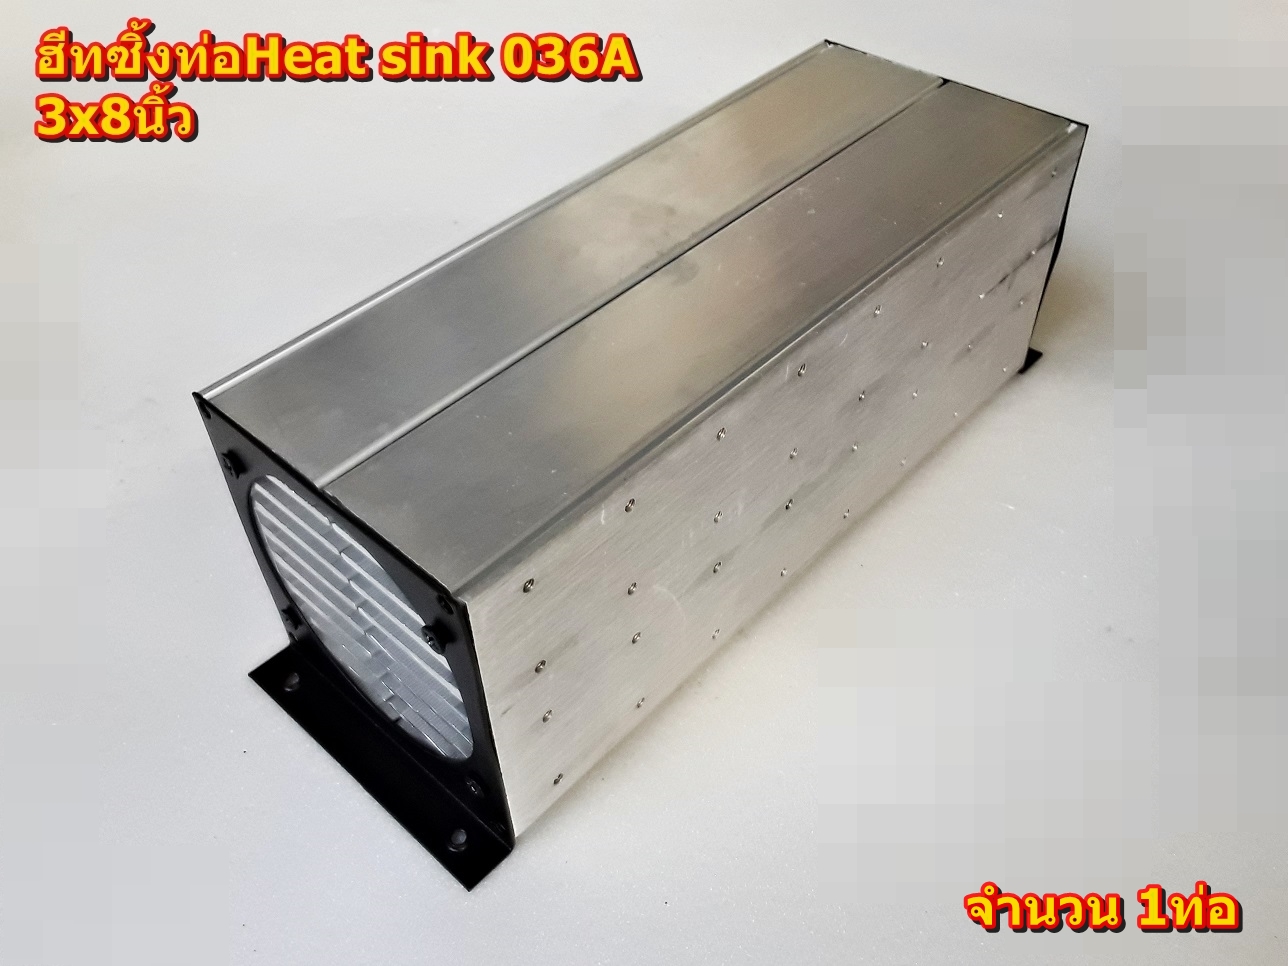 ฮีทซิ้งแบบท่อท่อ 3x8นิ้ว,3x10นิ้ว,3x12นิ้ว, Heat sink รุ่น 036A แผ่นระบายความร้อน(อุปกรณ์ Amplifier Bord โมดูลเครื่องขยายเสียง)